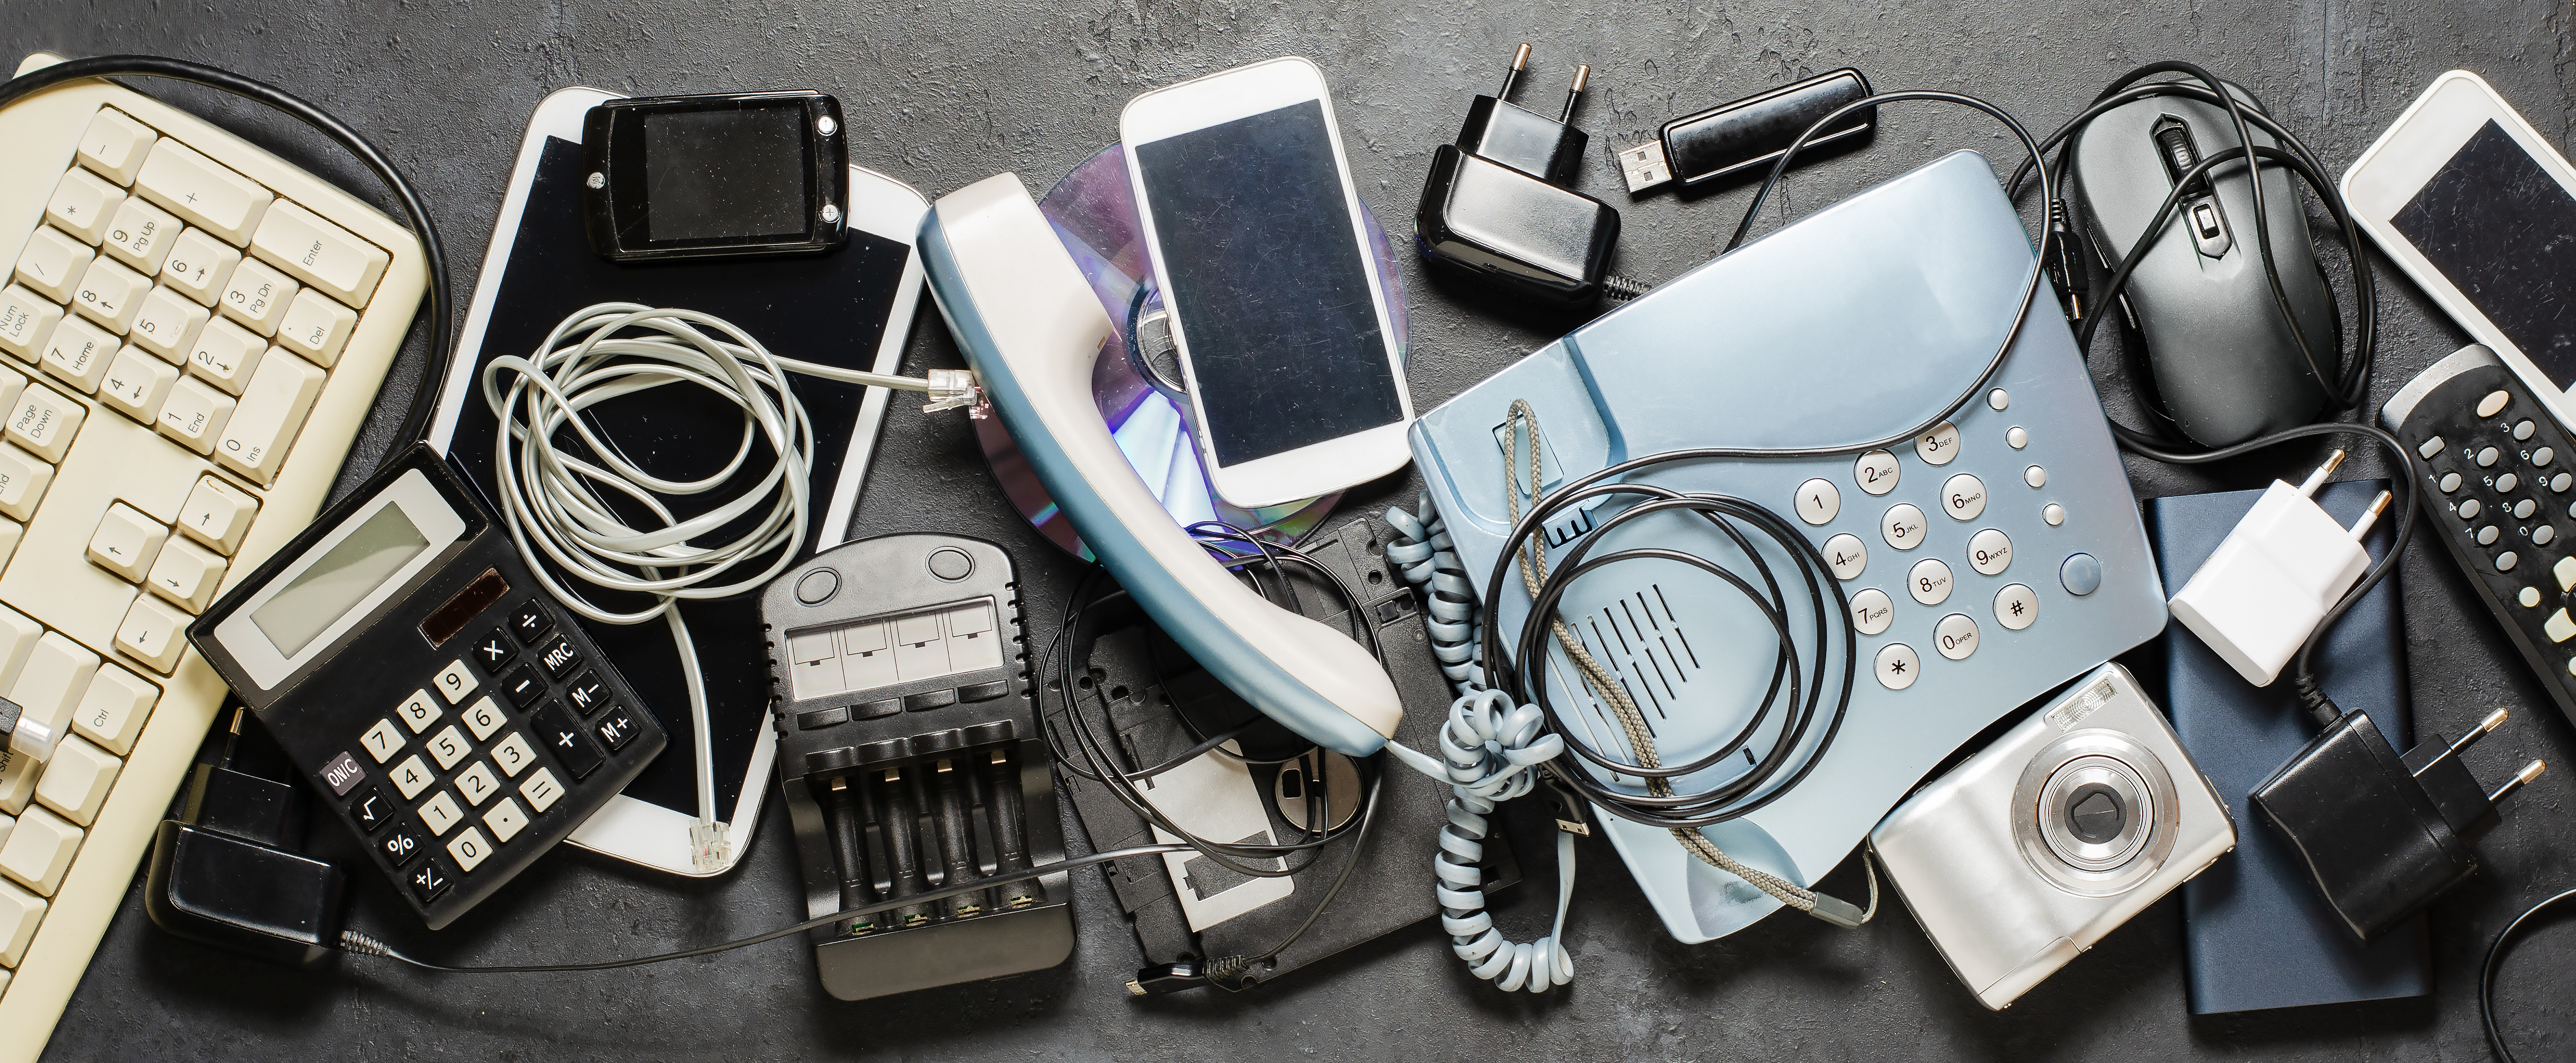 Kuvassa sähkölaitteita, muun muassa kännyköitä, vanhoja puhelimia, latureita, laskin ja näppäimistö.